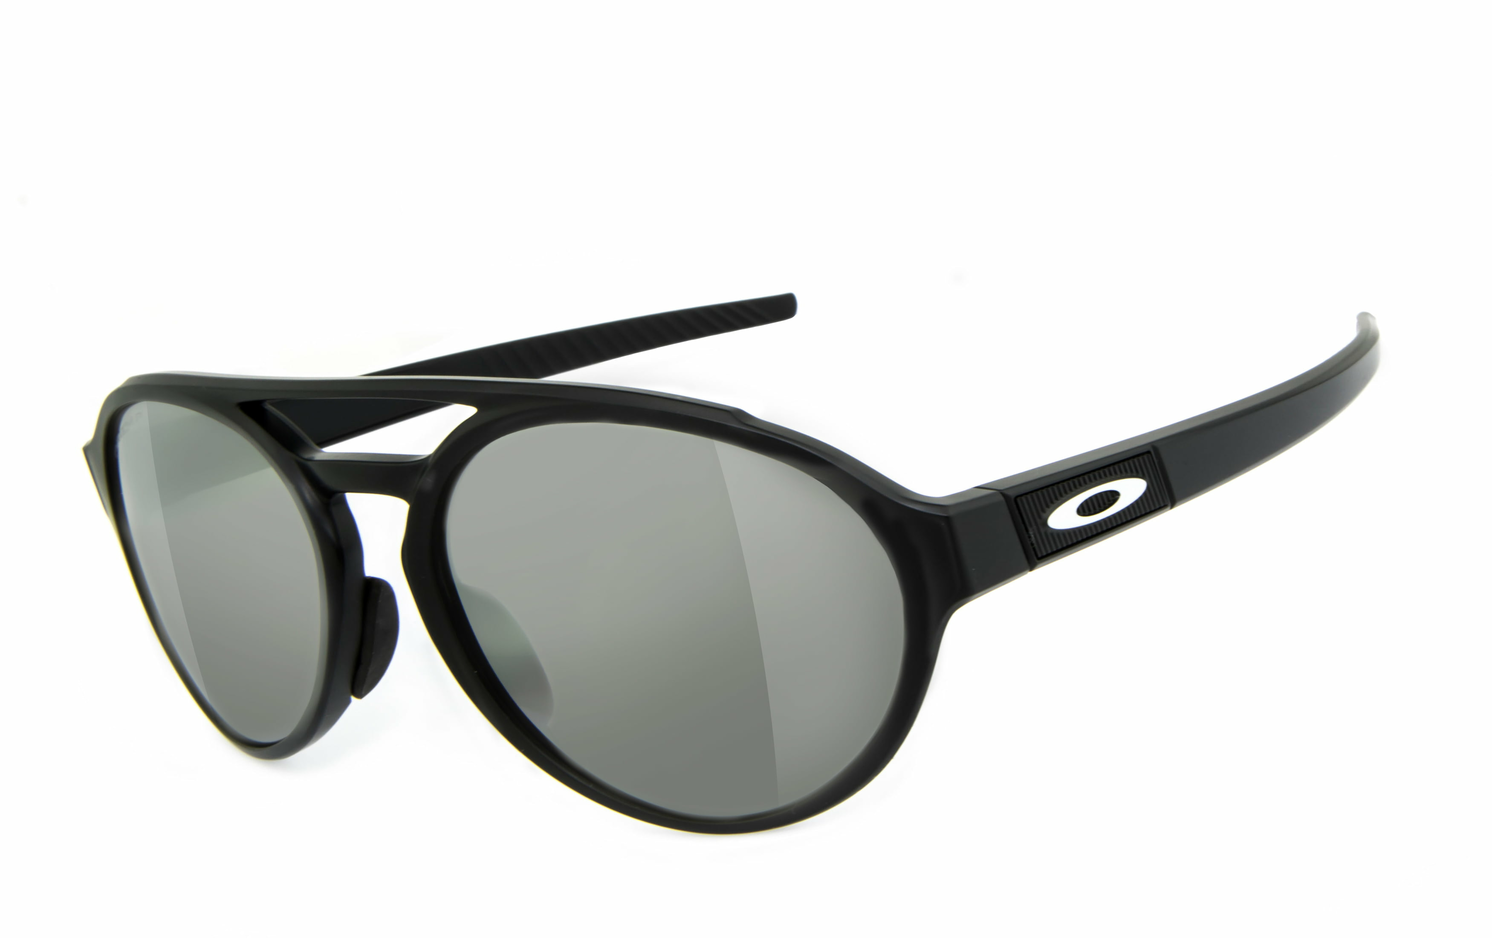 OAKLEY | FORAGER  Sportbrille, Fahrradbrille, Sonnenbrille, Bikerbrille, Radbrille, UV400 Schutzfilter